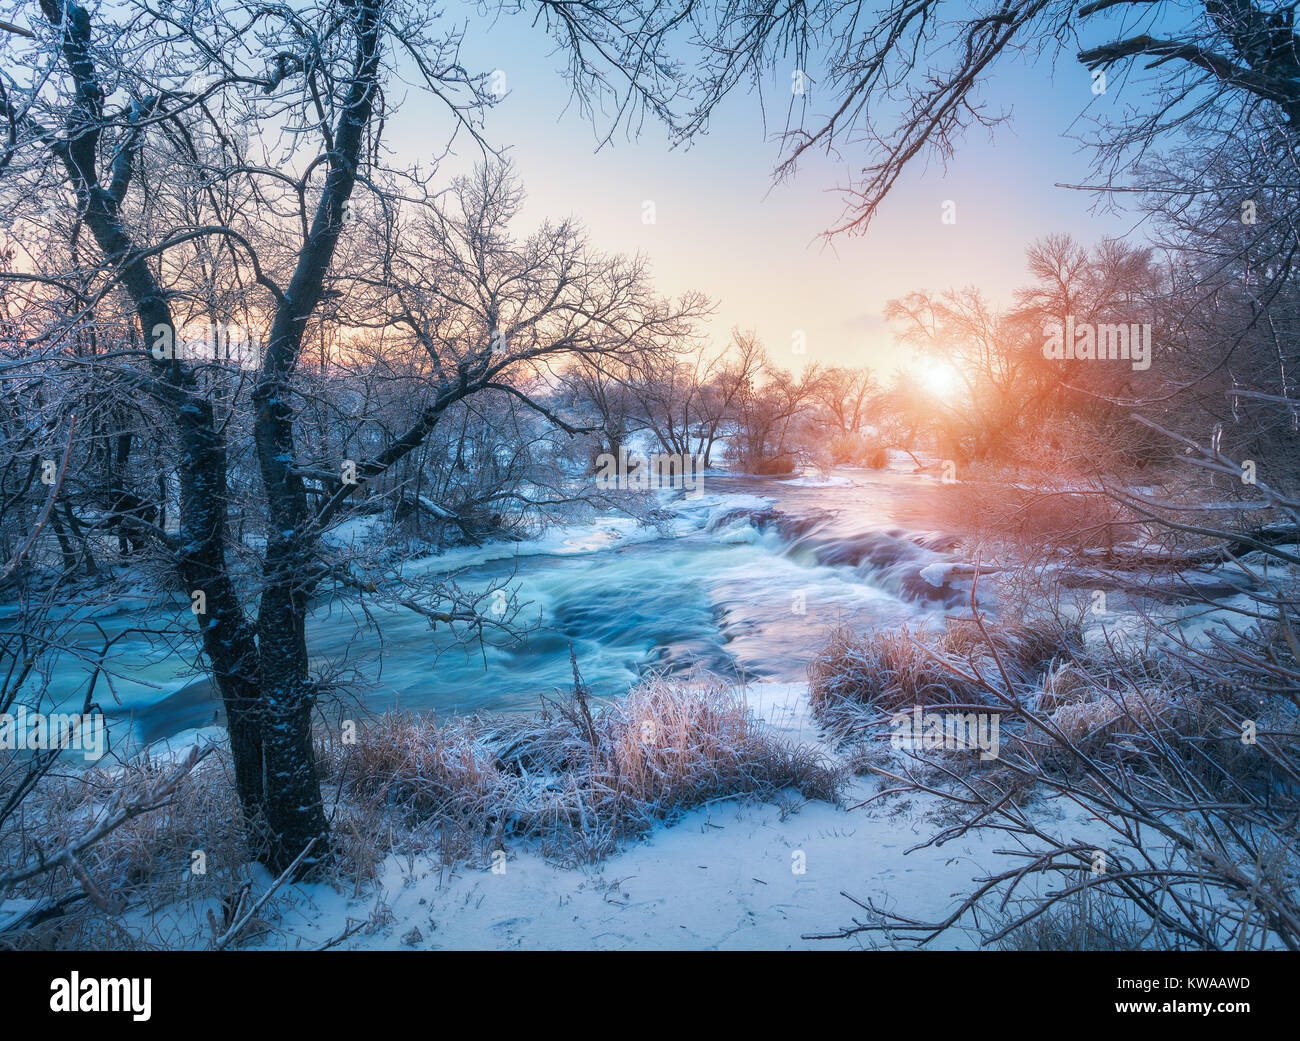 Foresta di inverno con il maestoso fiume al tramonto. Paesaggio invernale con alberi innevati, ghiaccio, bellissimo fiume congelato, boccole nevoso e colorati di cielo nel crepuscolo. Blurre Foto Stock